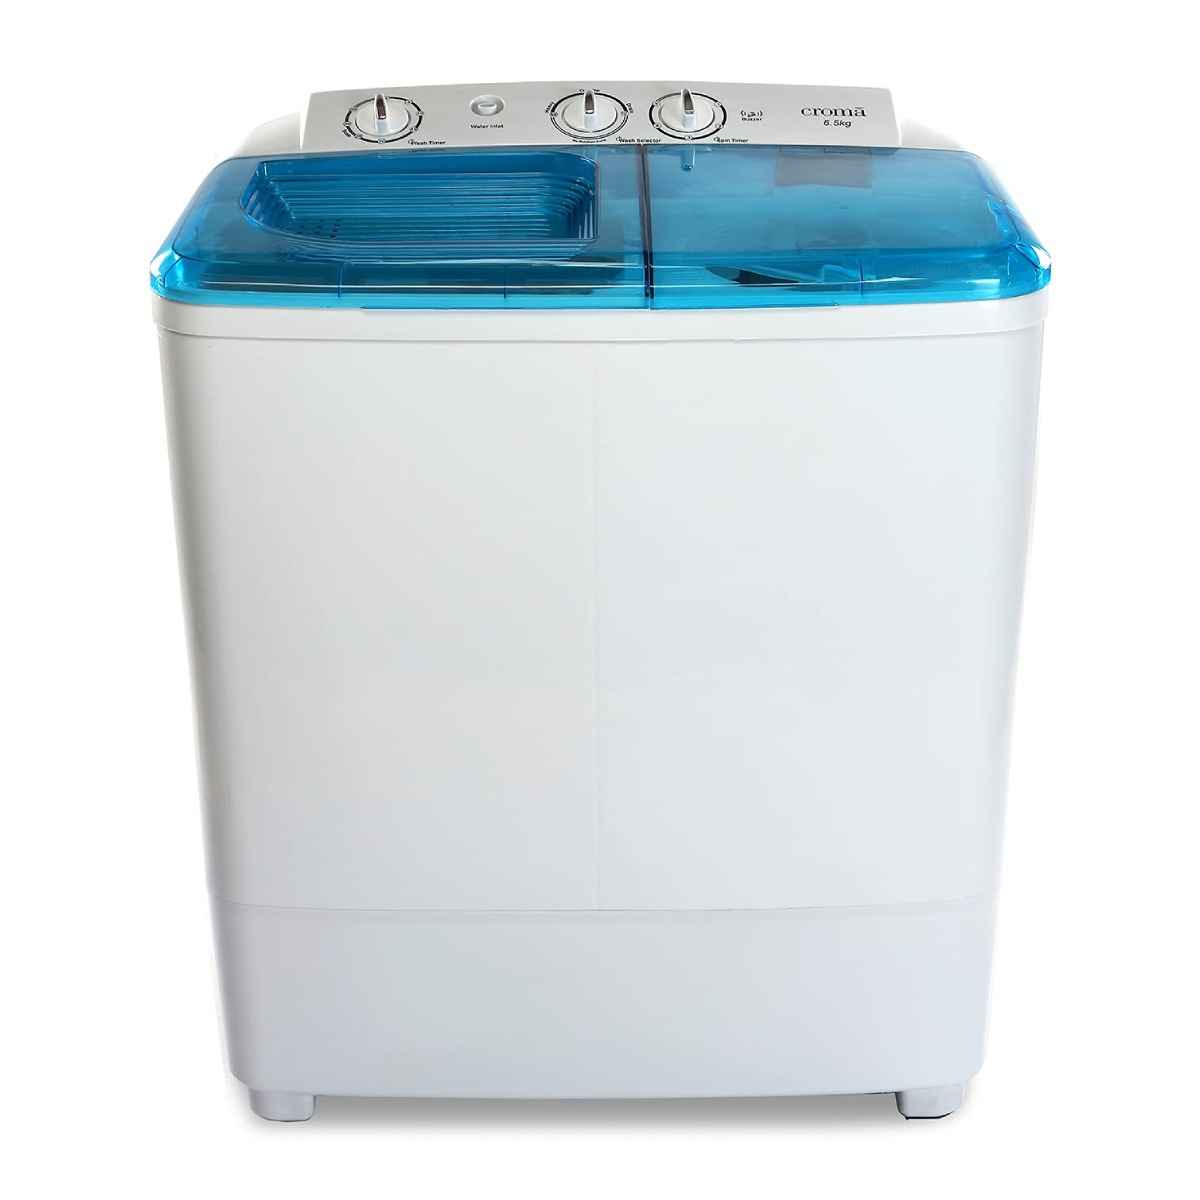 க்ரோமா Semi-automatic top load washing machine (CRAW2221) 